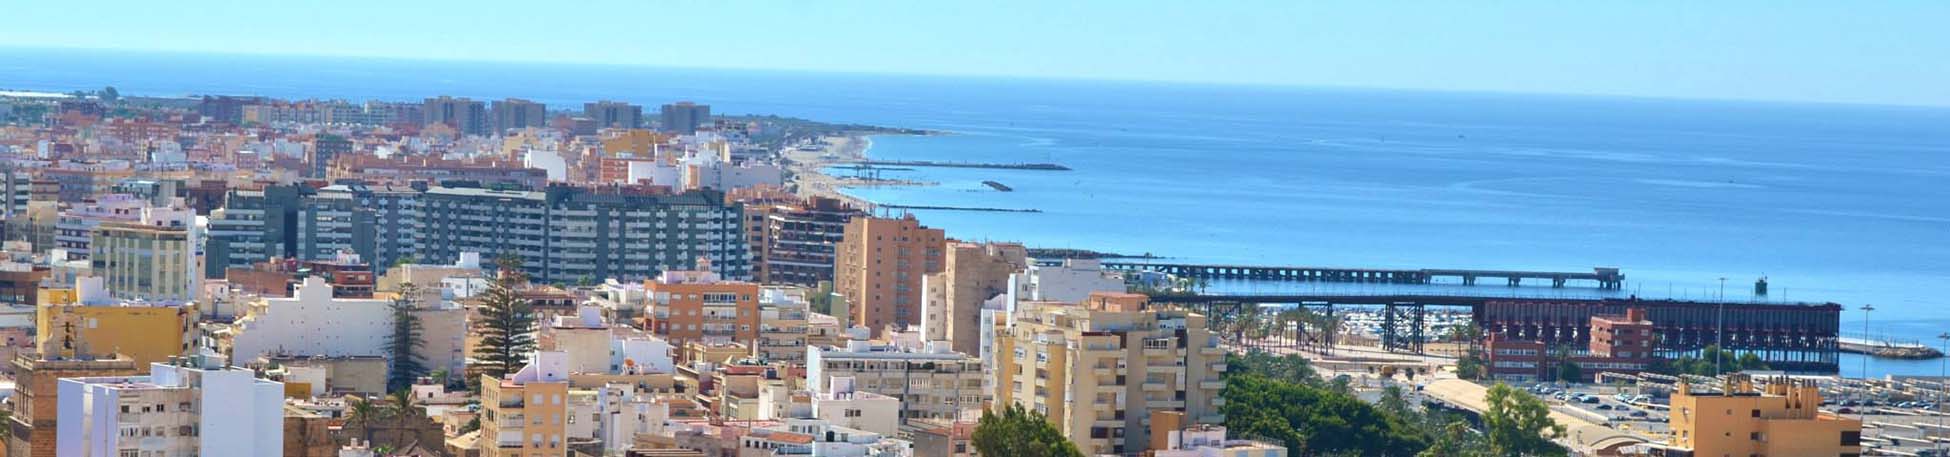 Imatge recurs del port de destinació Almeria per a la ruta en ferry Nador - Almeria